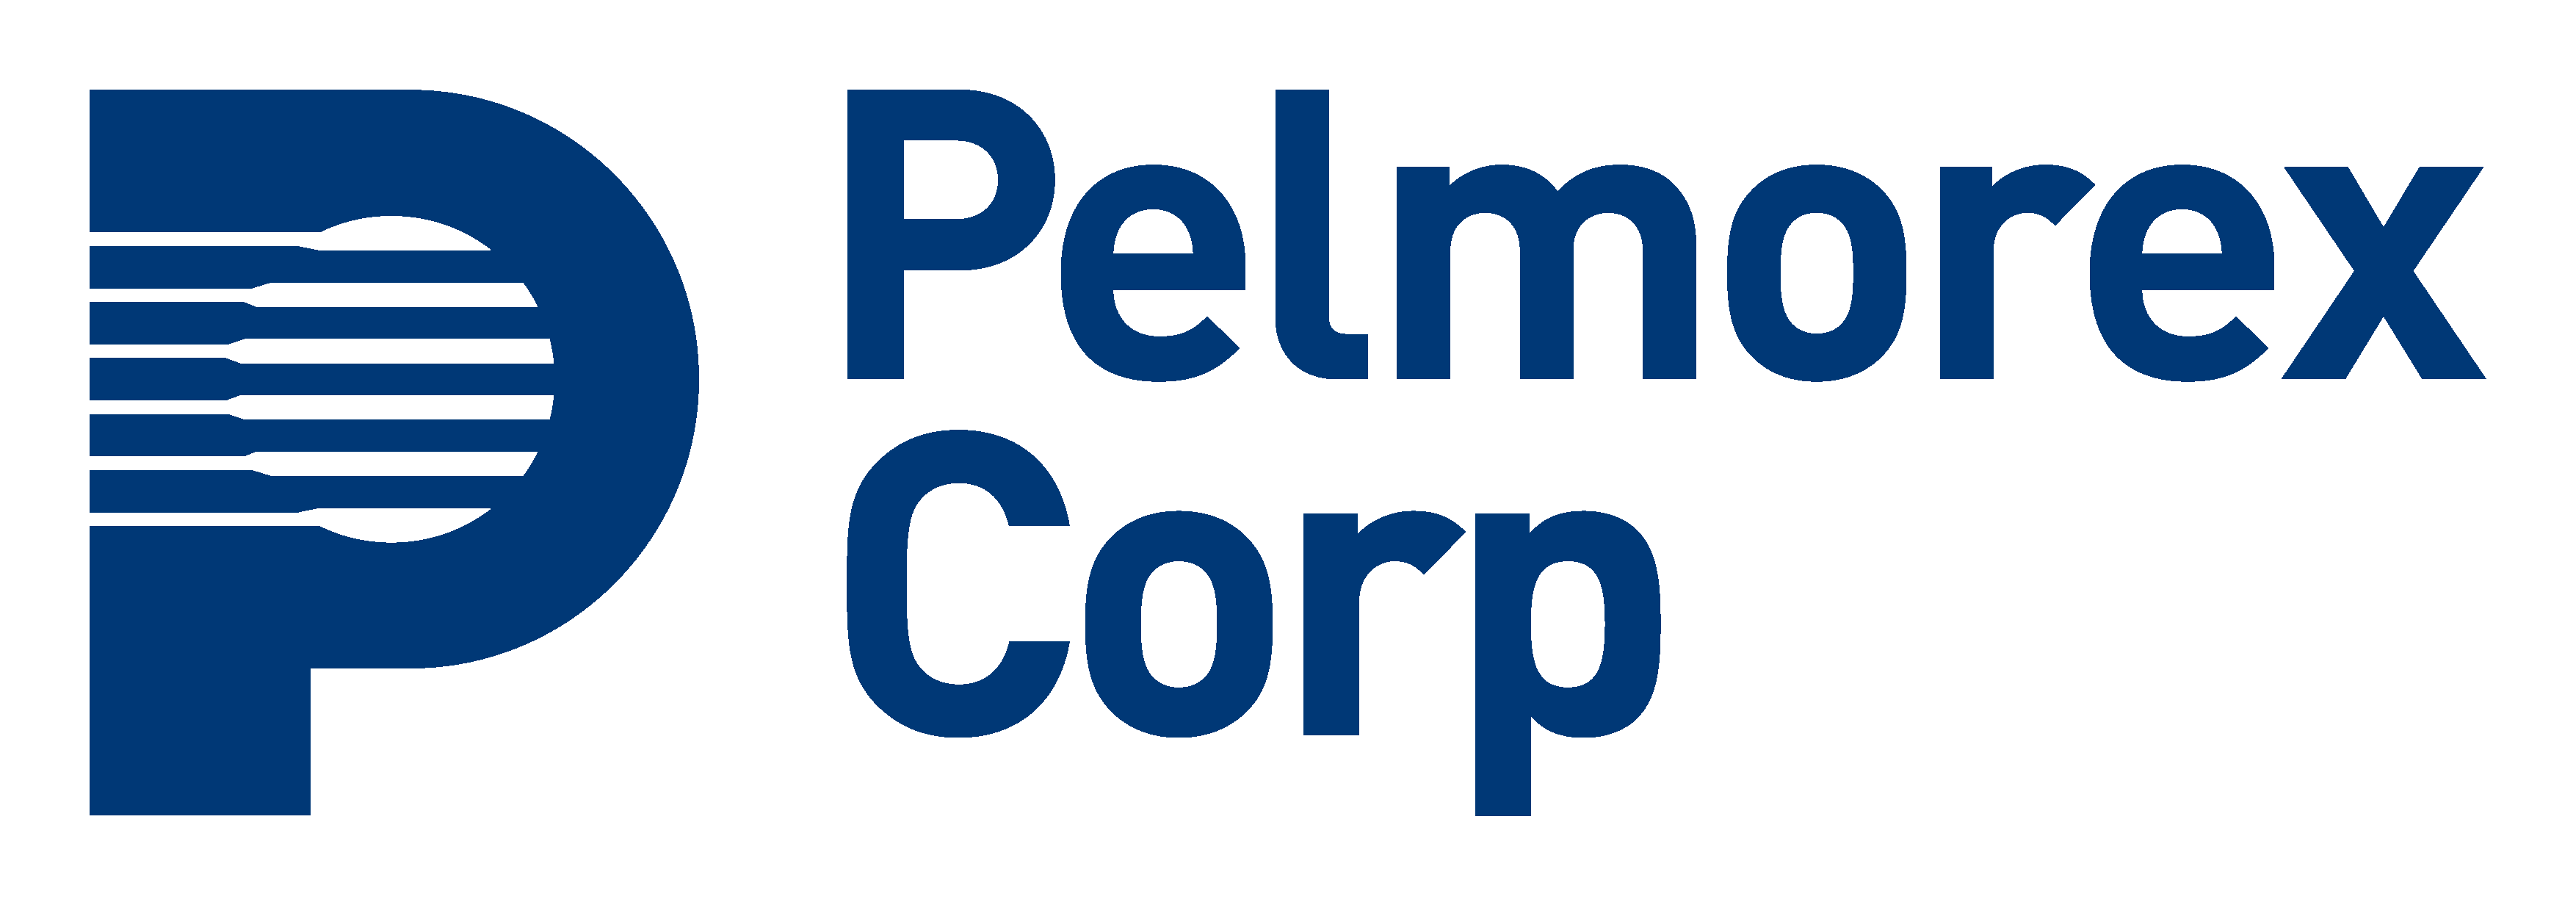 Pelmorex Corp.